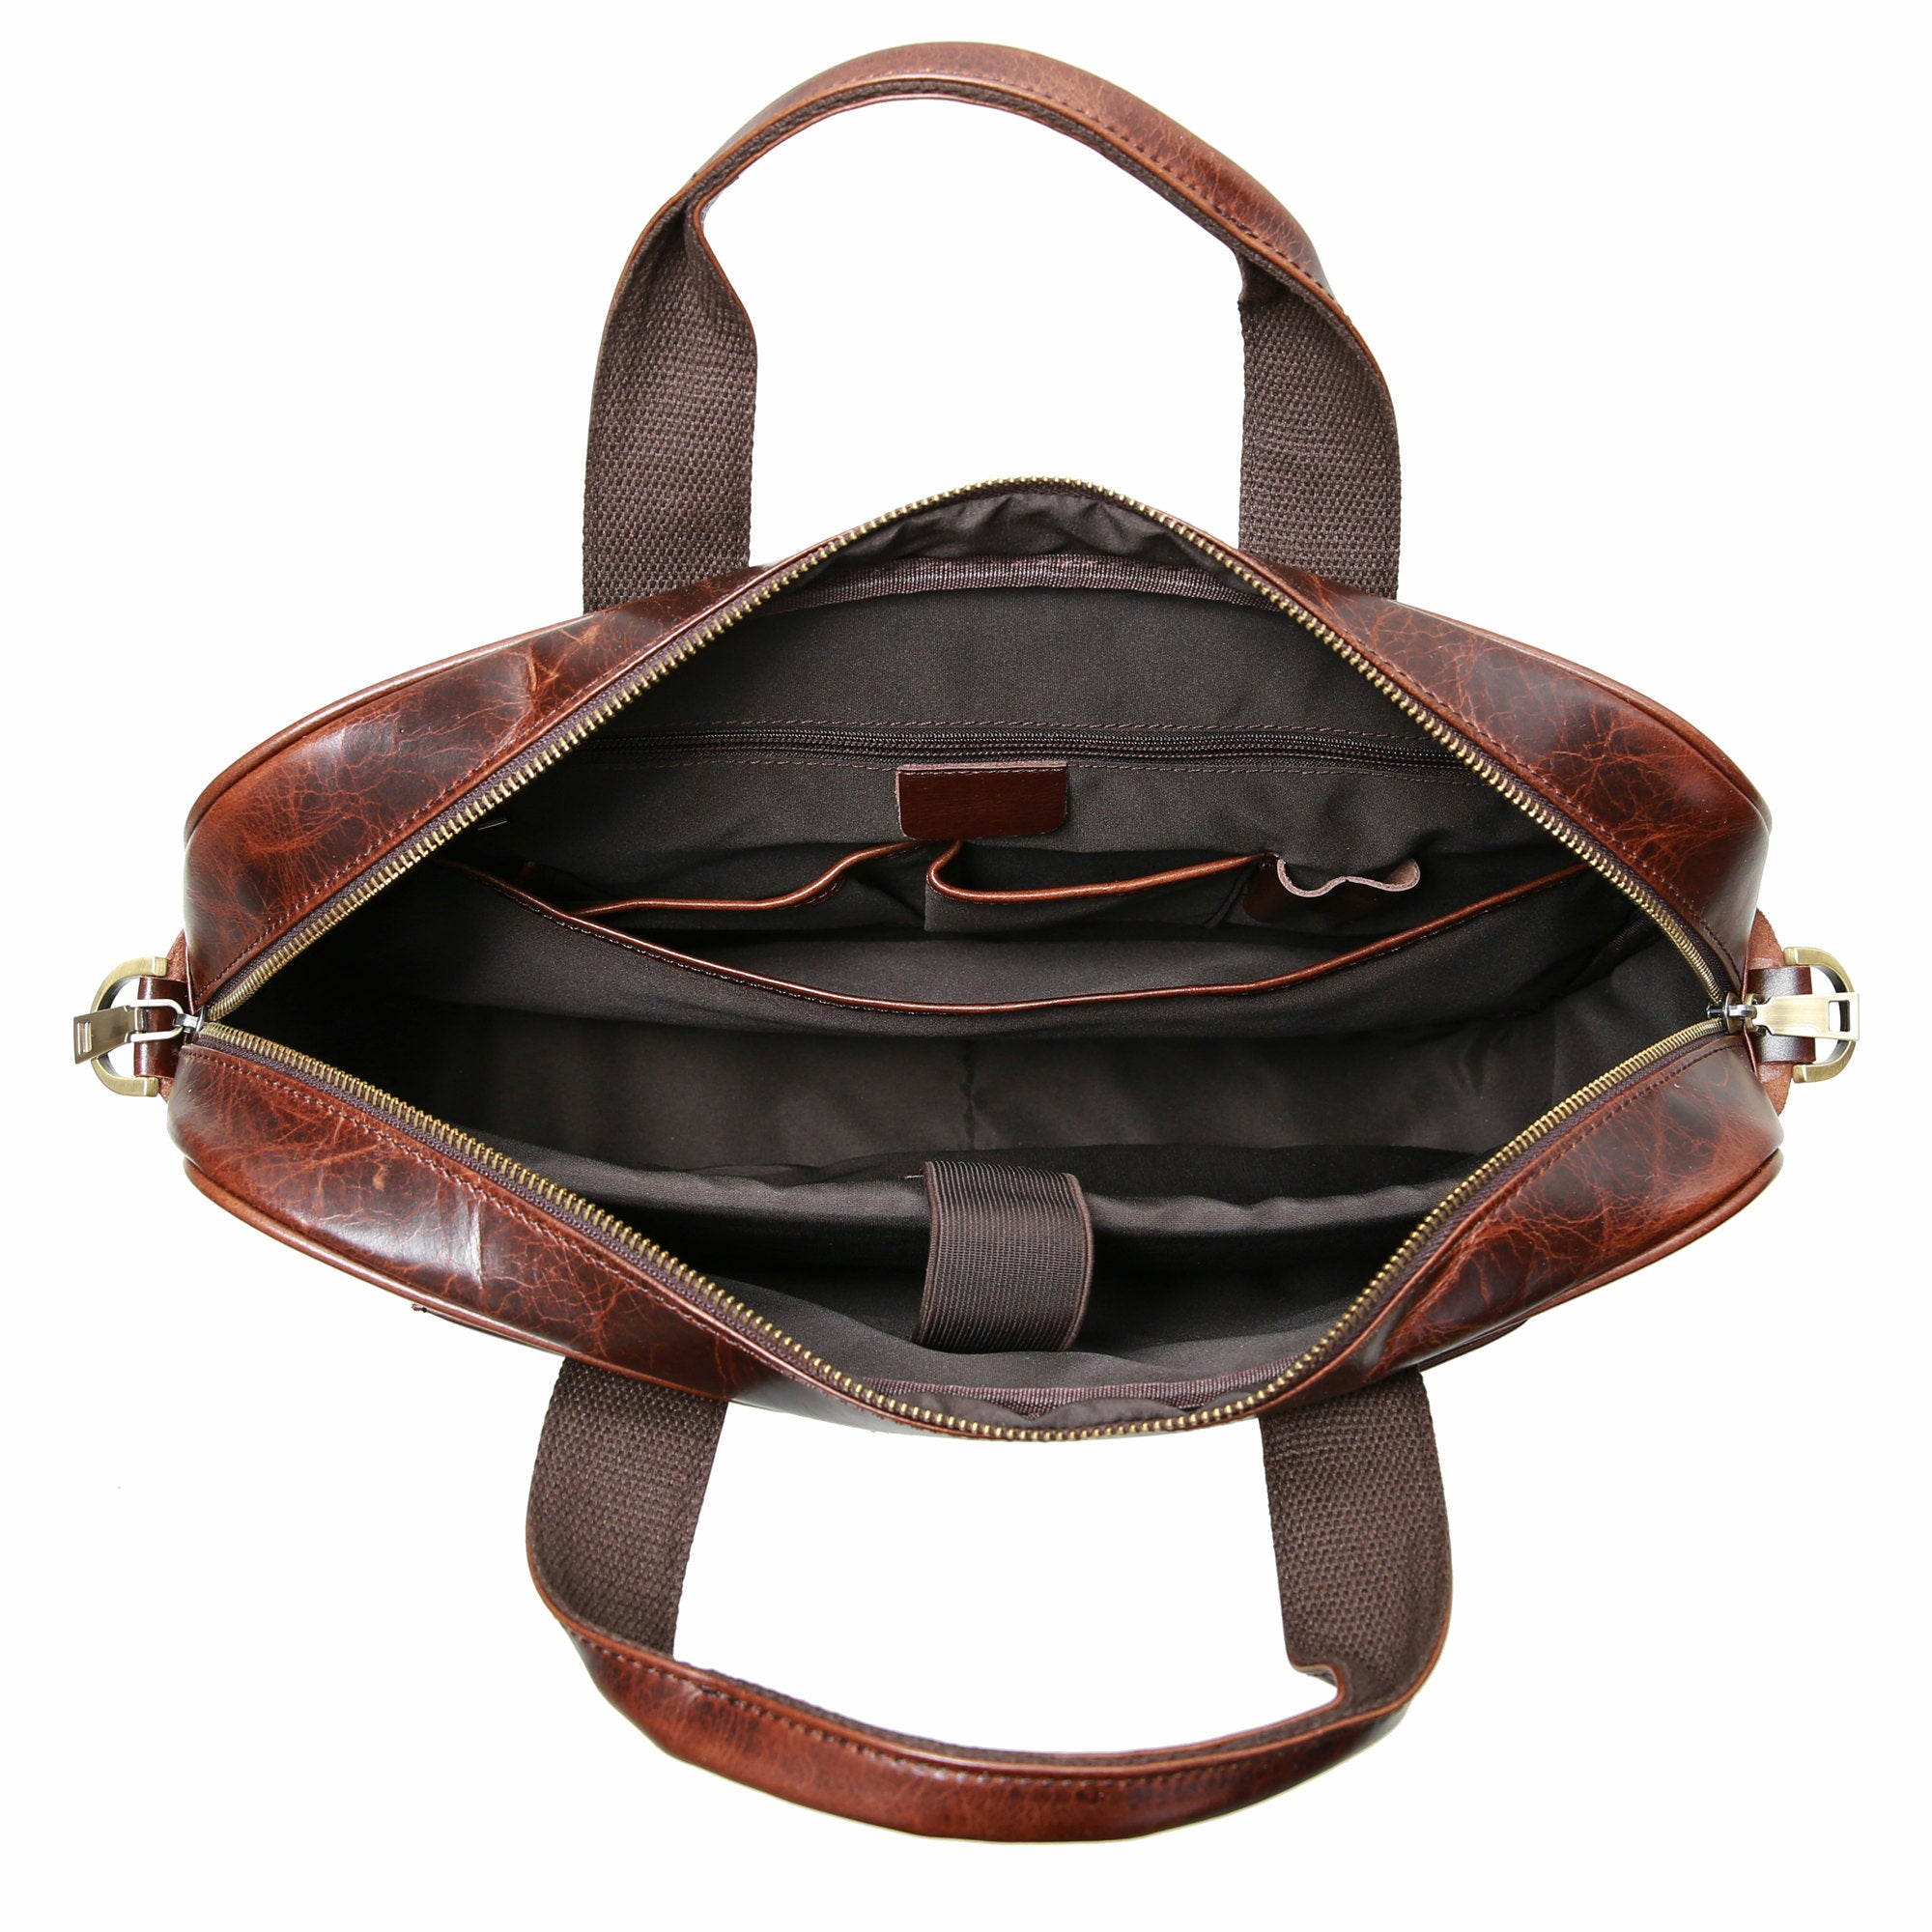 Leather 16" Laptop Briefcase for Men Shoulder Bag Travel